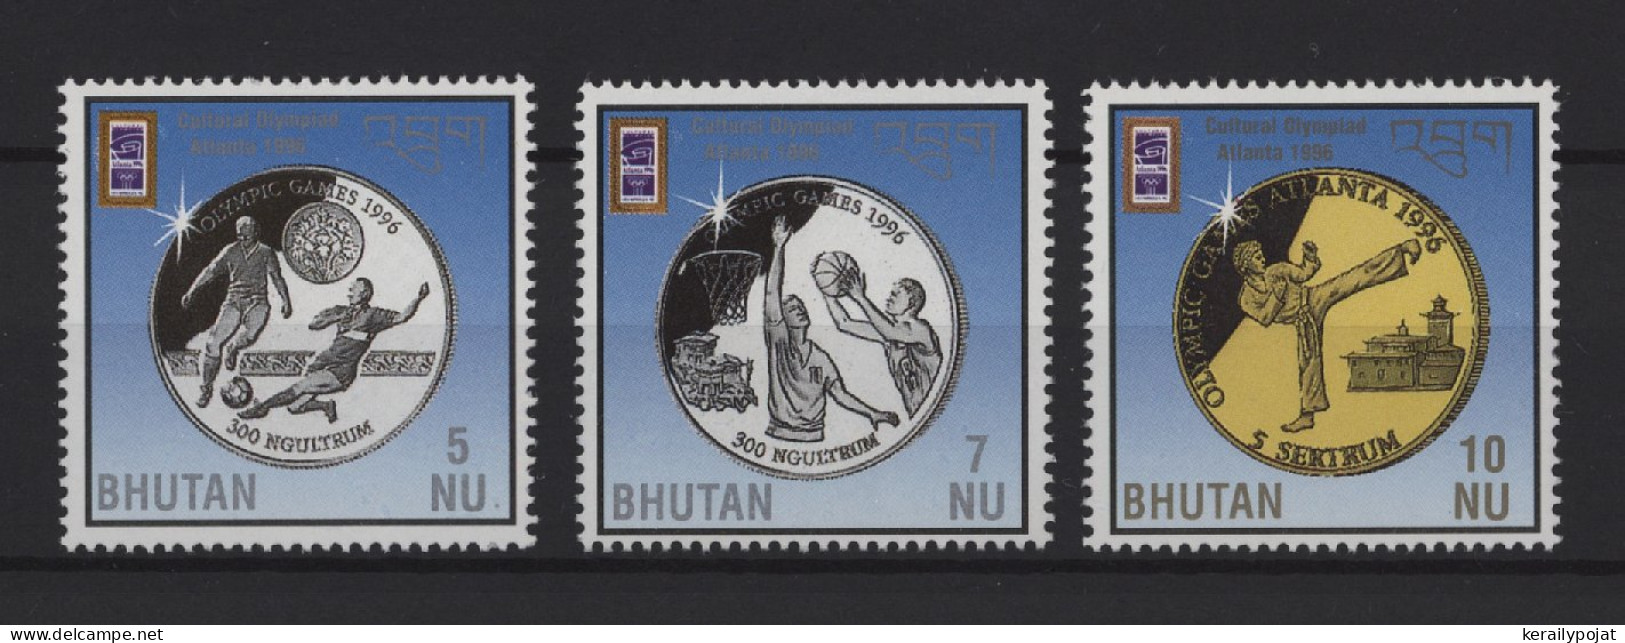 Bhutan - 1996 Summer Olympics Atlanta MNH__(TH-27608) - Bhutan